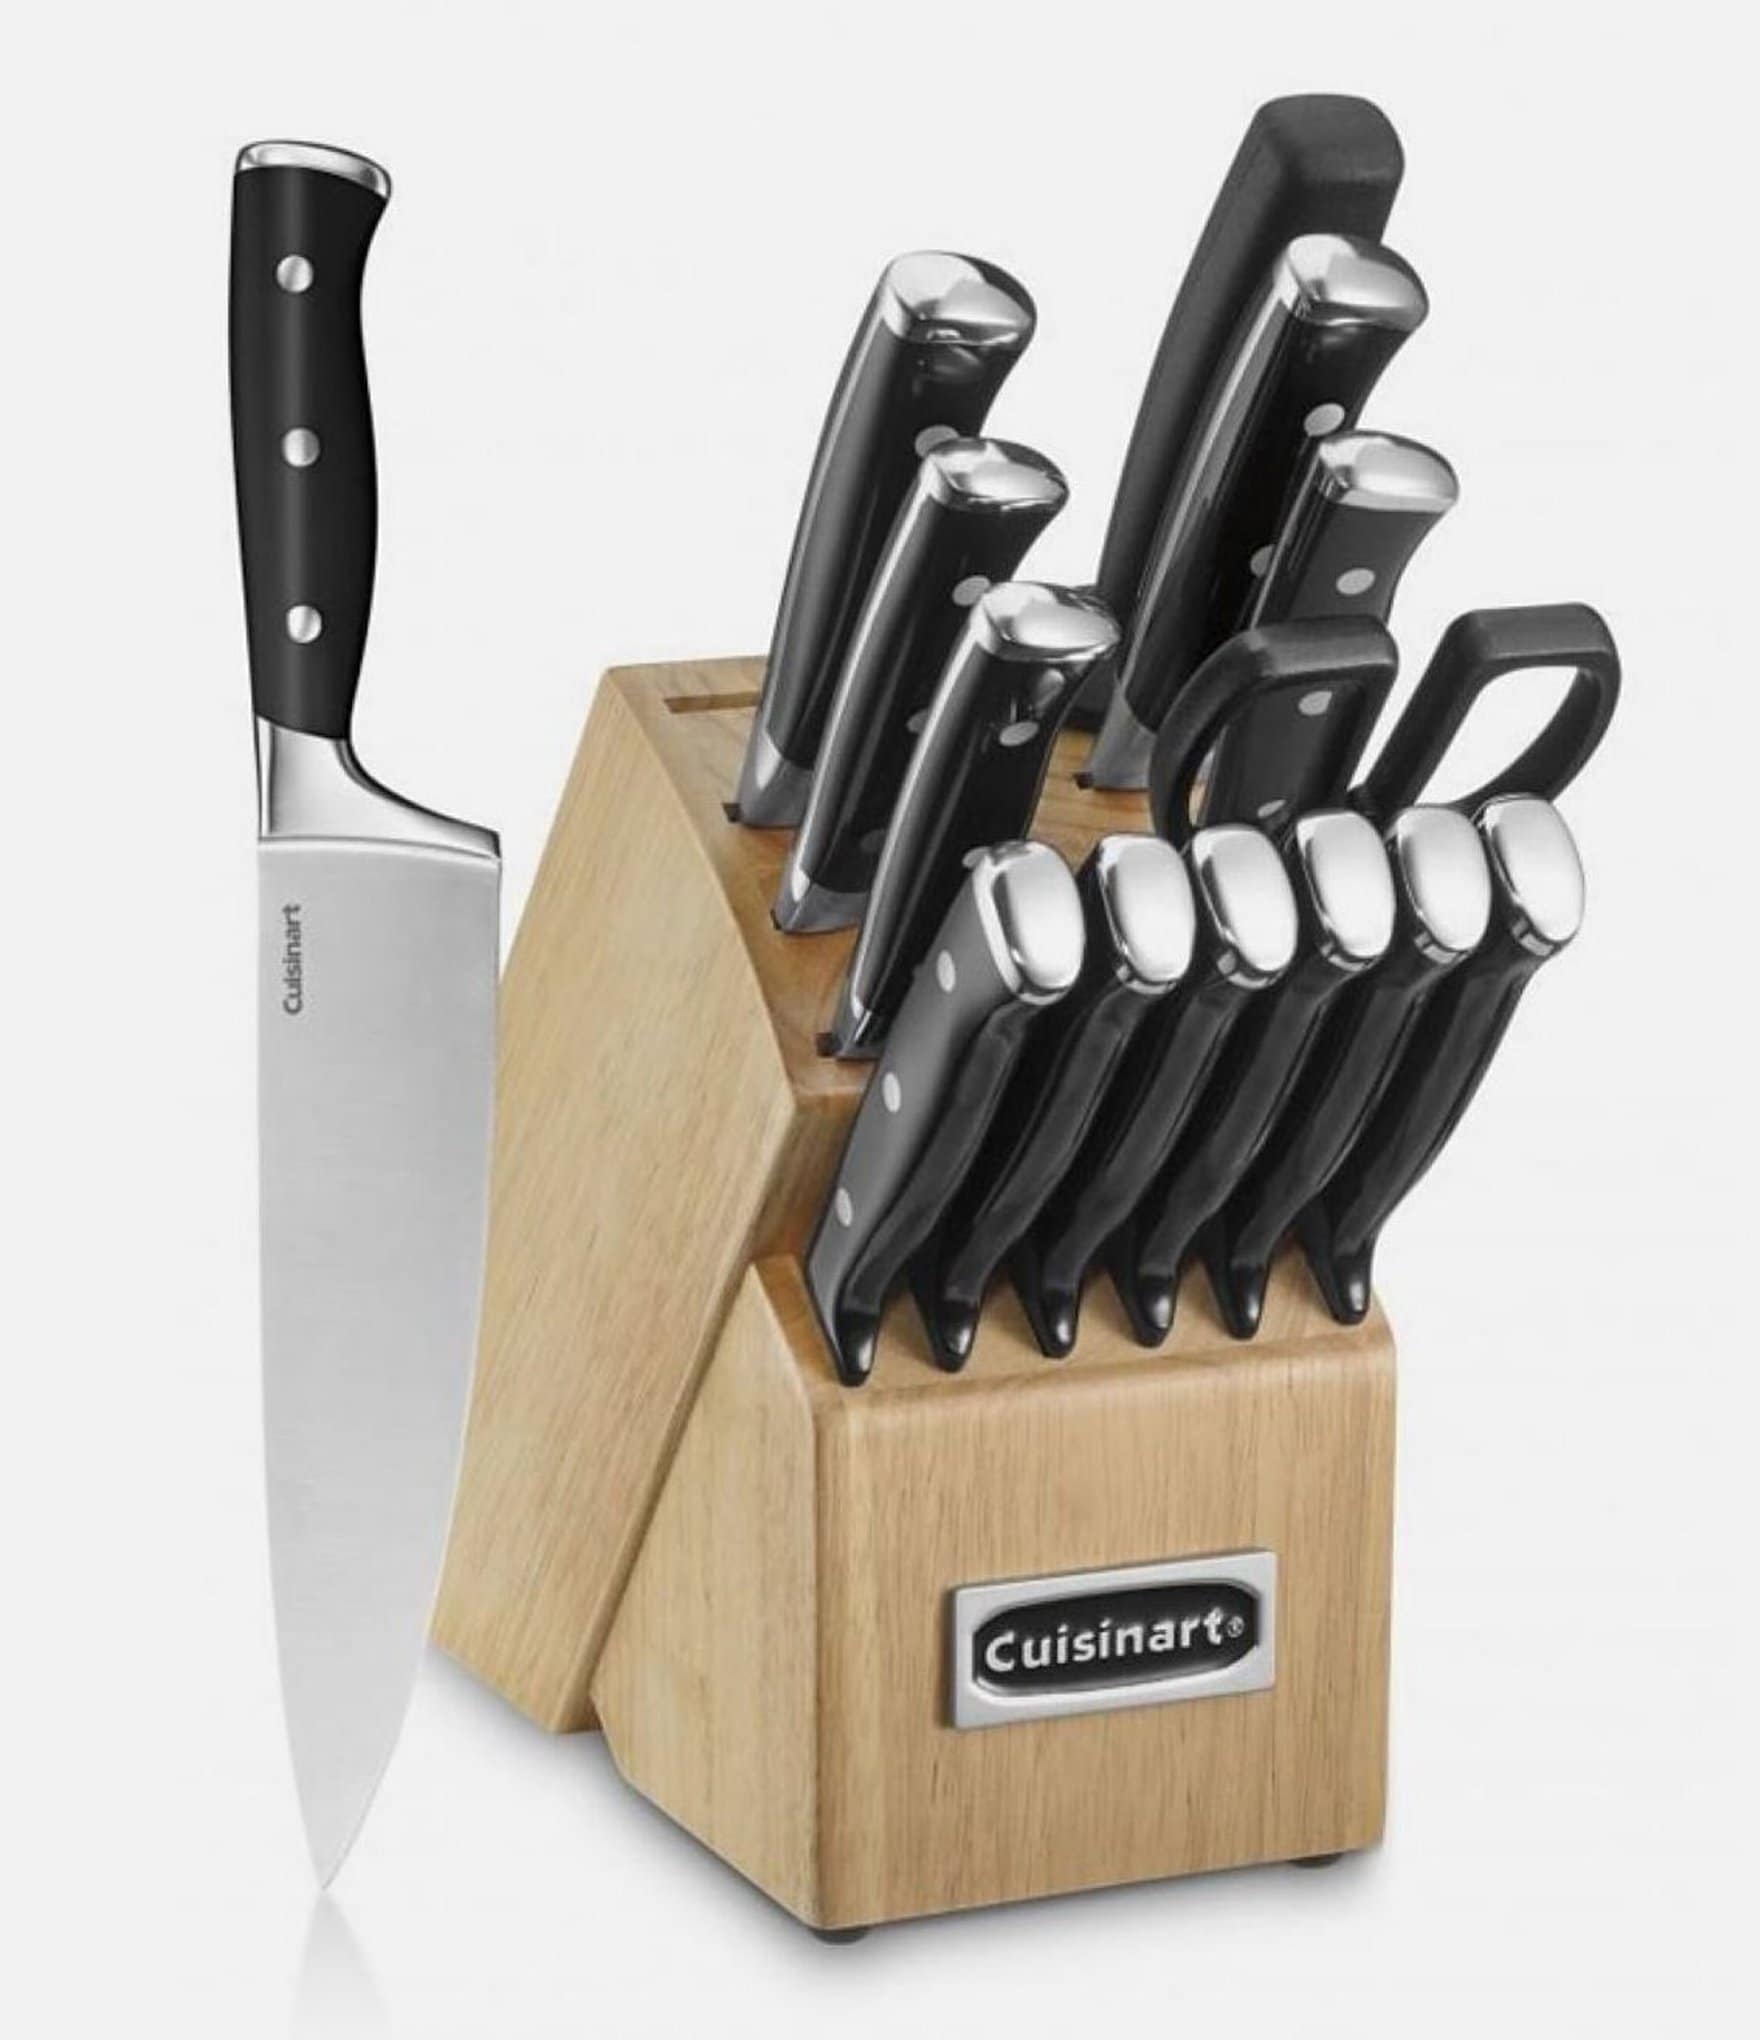 https://dimg.dillards.com/is/image/DillardsZoom/zoom/cuisinart-triple-rivet-15-piece-cutlery-set-in-block/20152008_zi.jpg